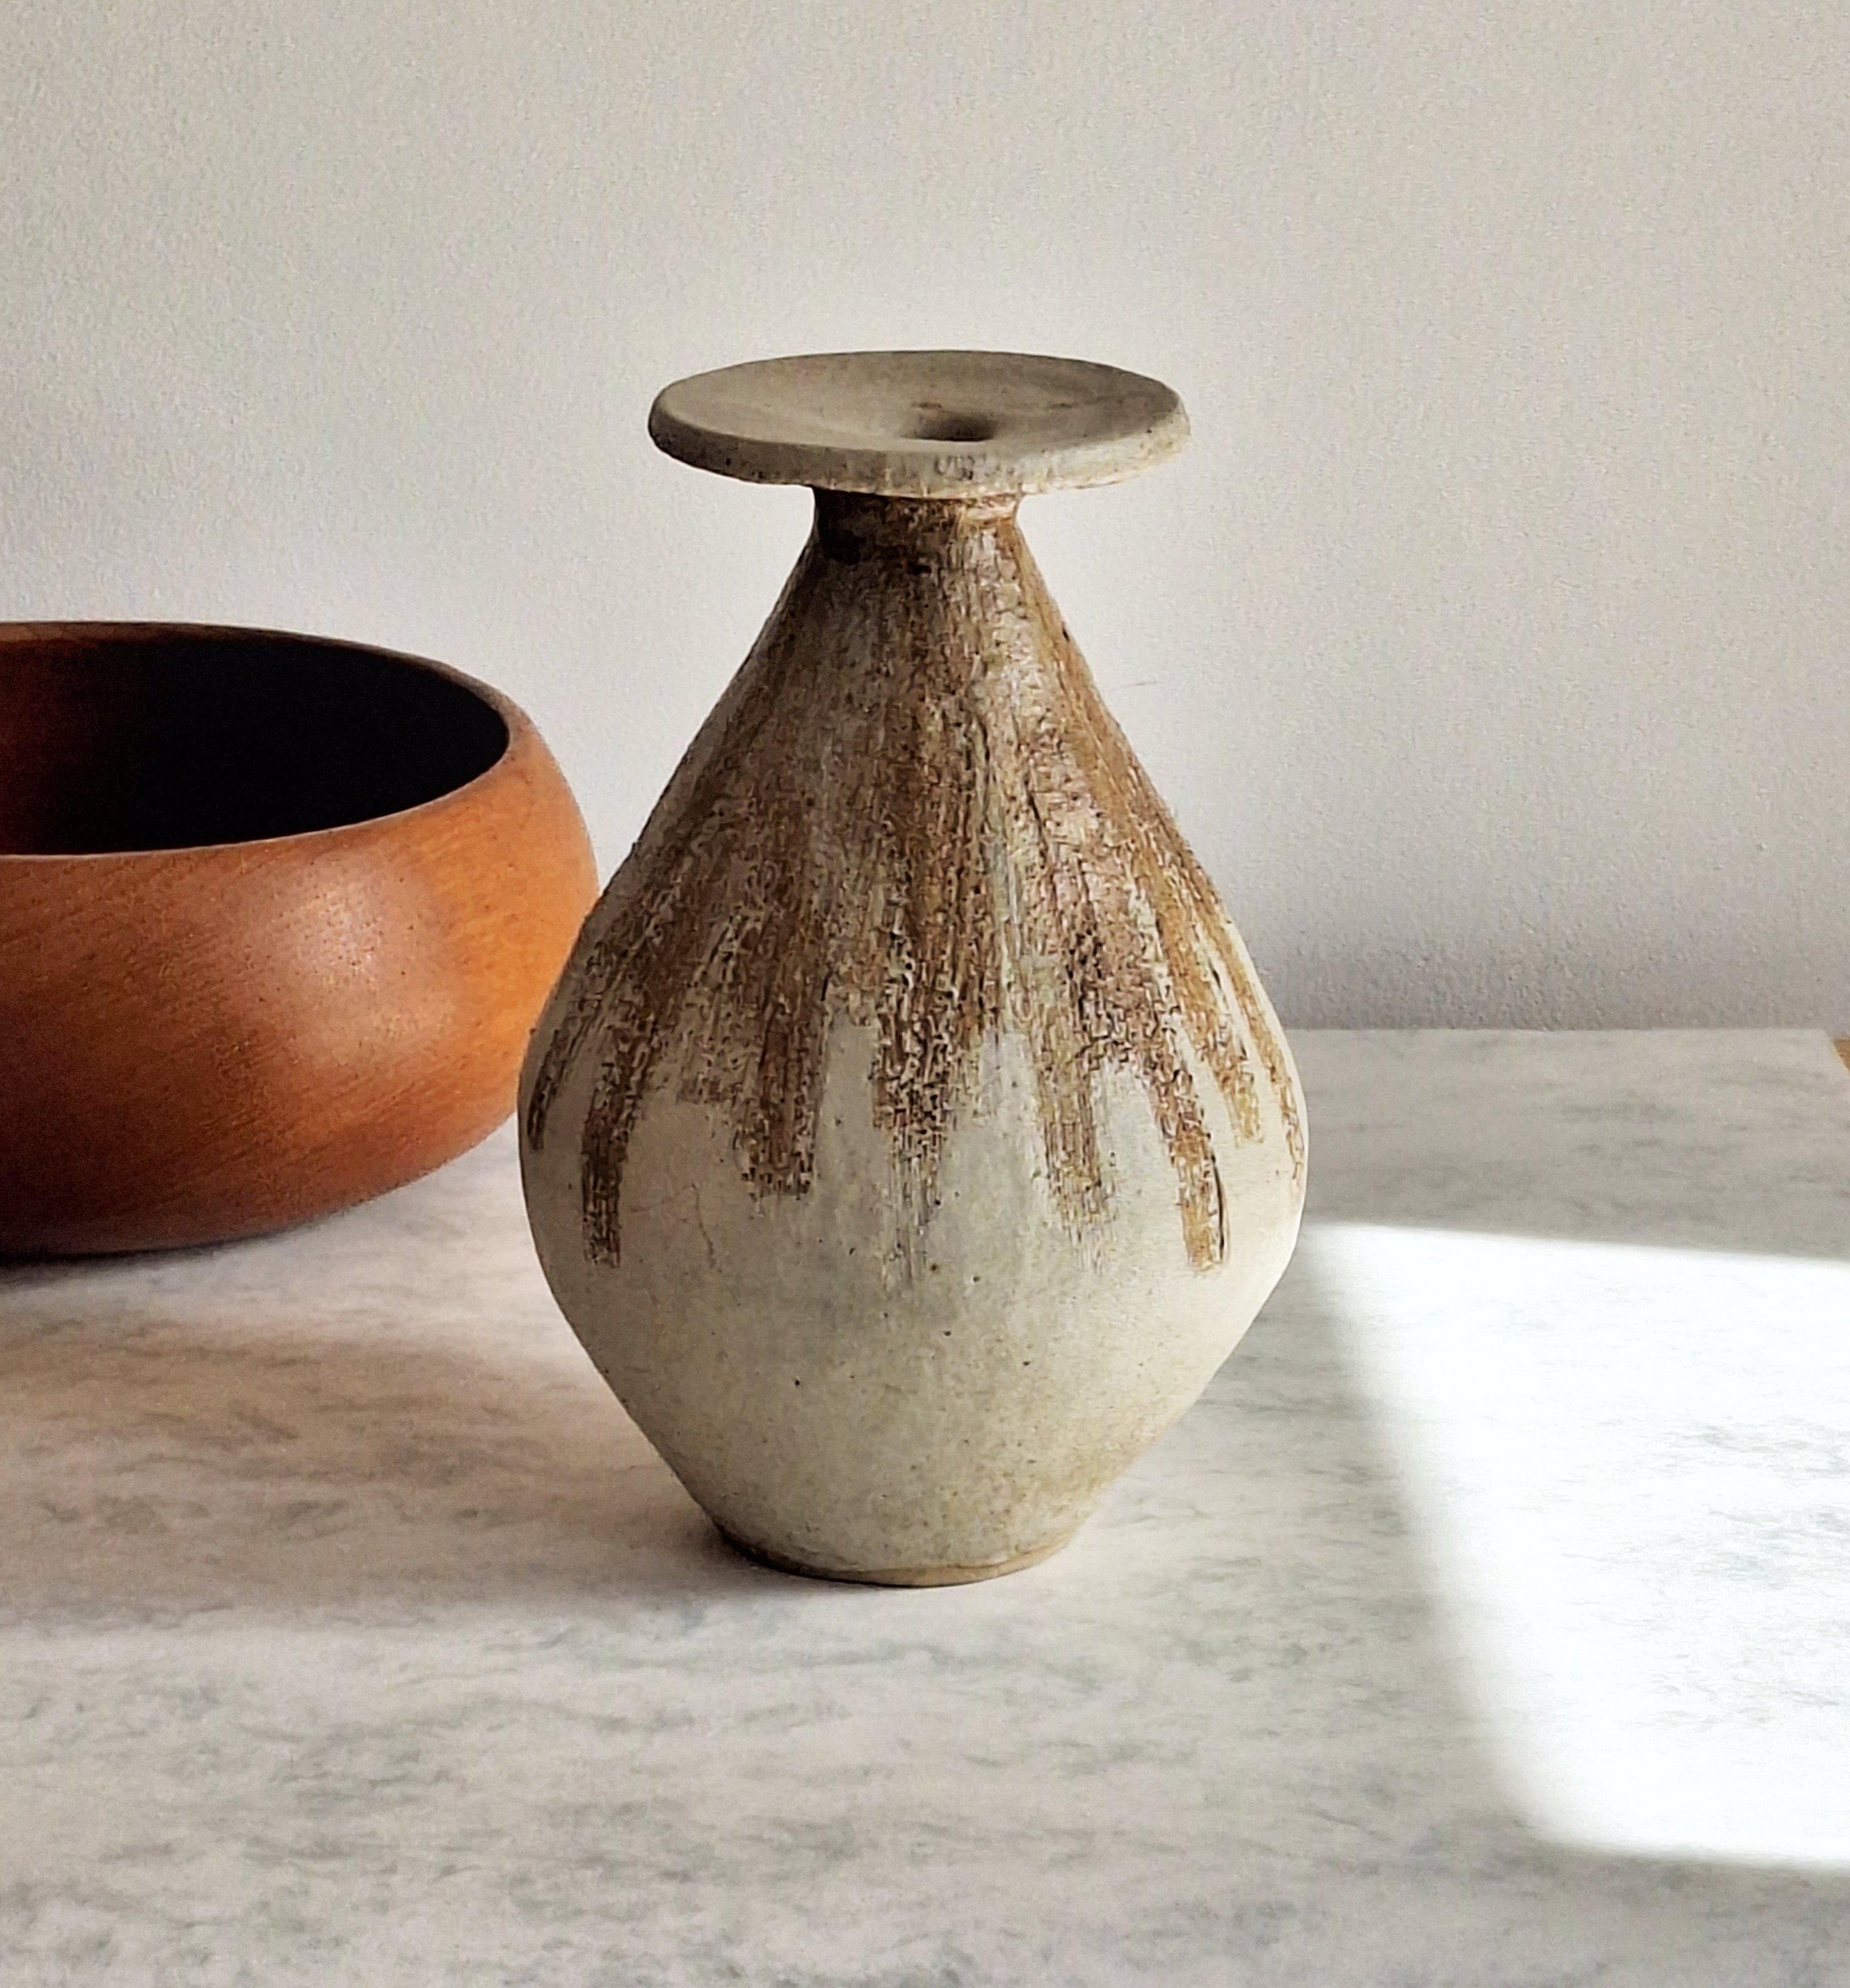 Un étonnant vase vintage en poterie de Studio, de forme arrondie et bulbeuse en forme de goutte d'eau, dans un style moderne typique du milieu du siècle, une pièce très élégante et substantielle à la fois.

Ce vase en grès lourd et arrondi se